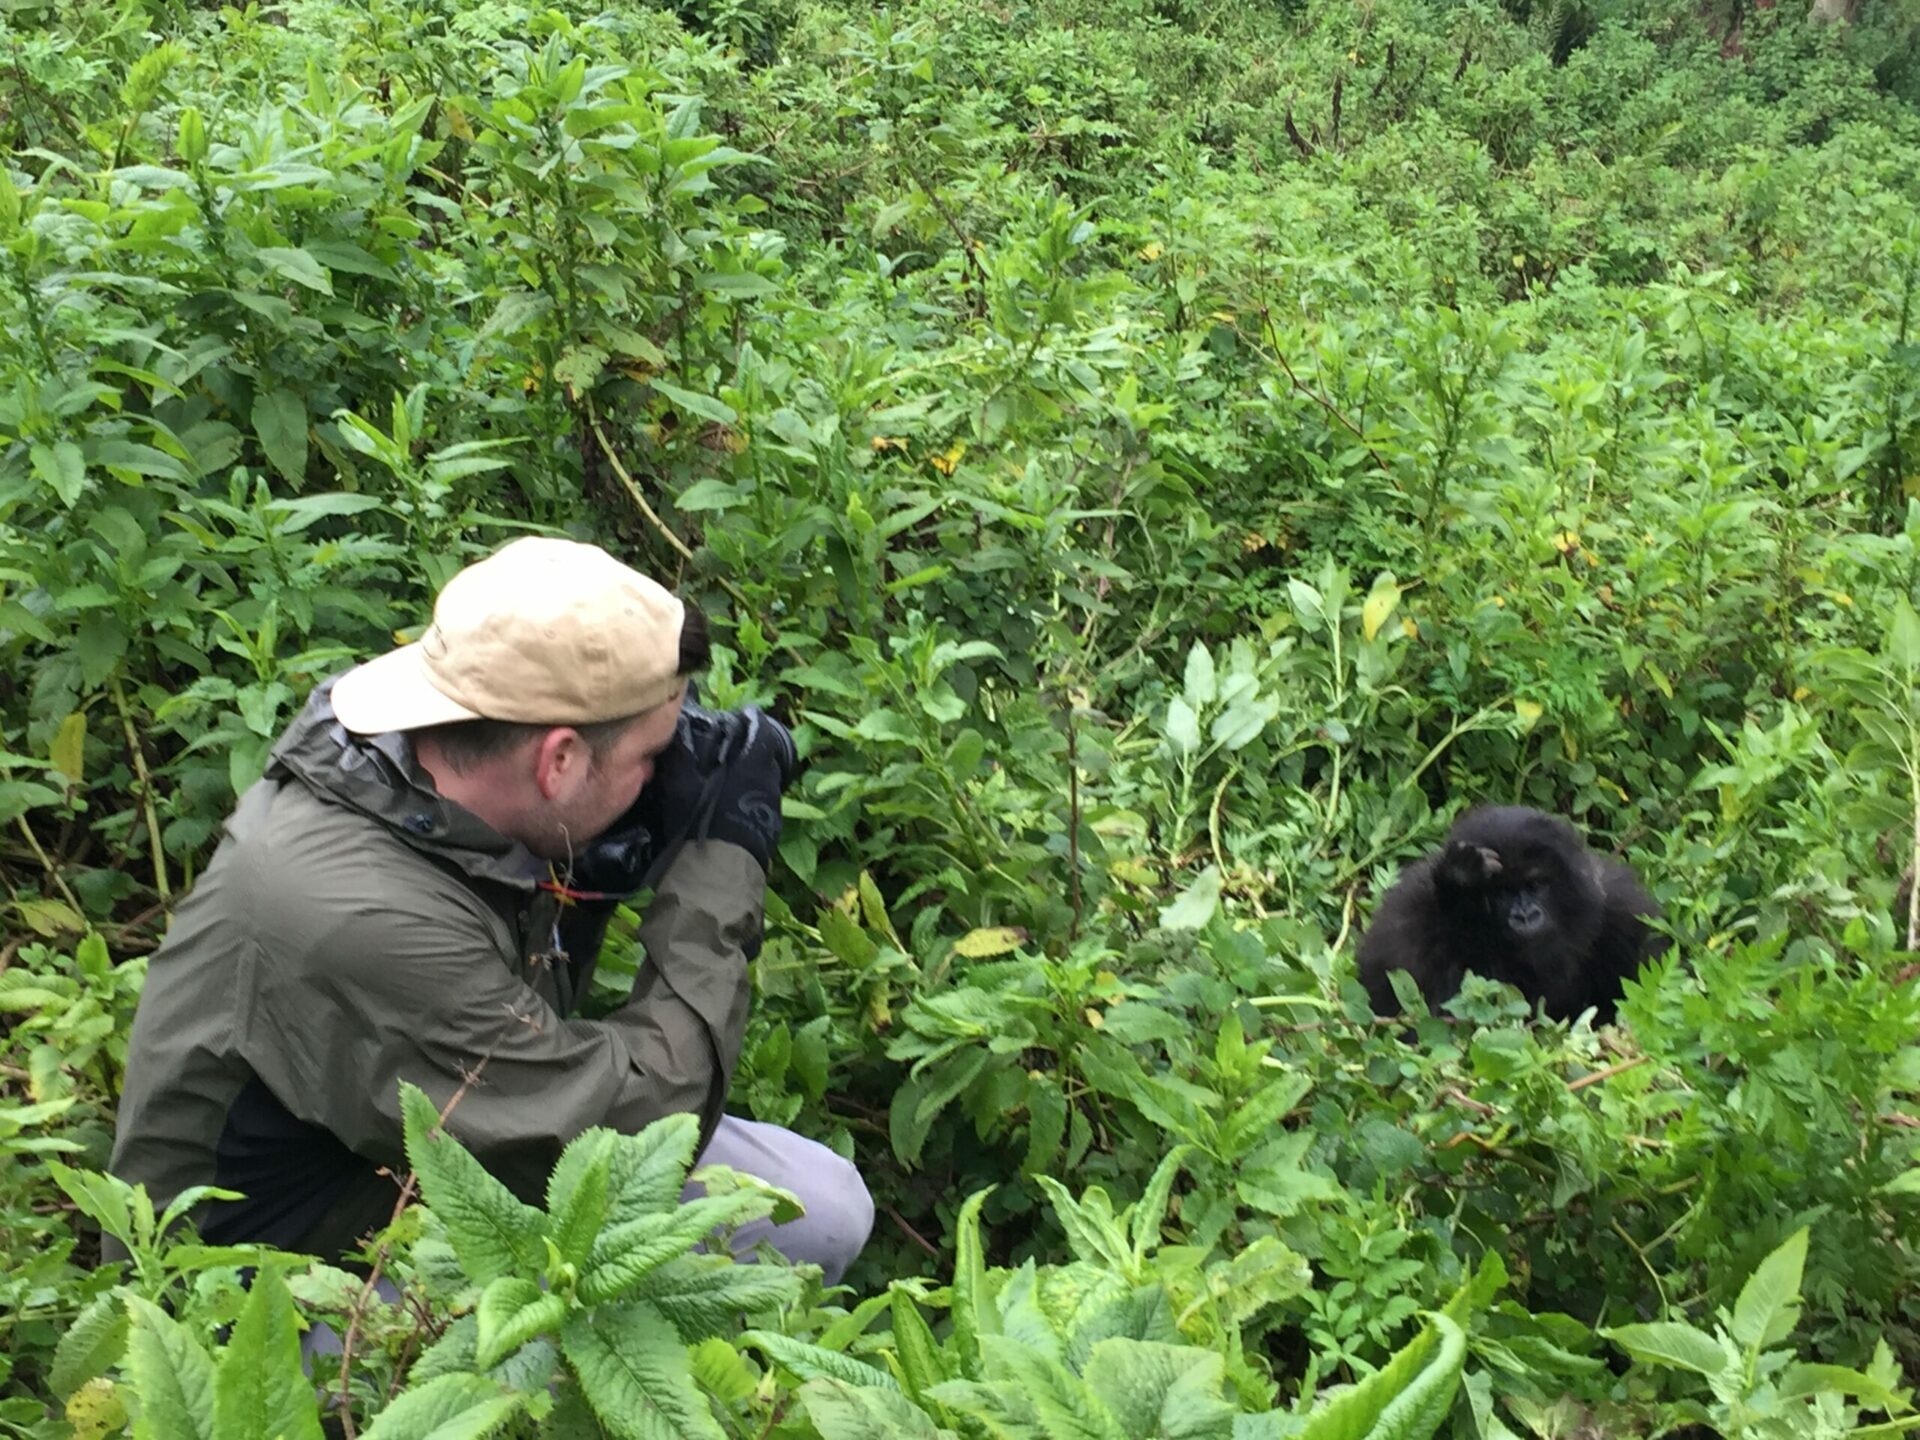 man taking a photo of a gorilla in the bush in Rwanda